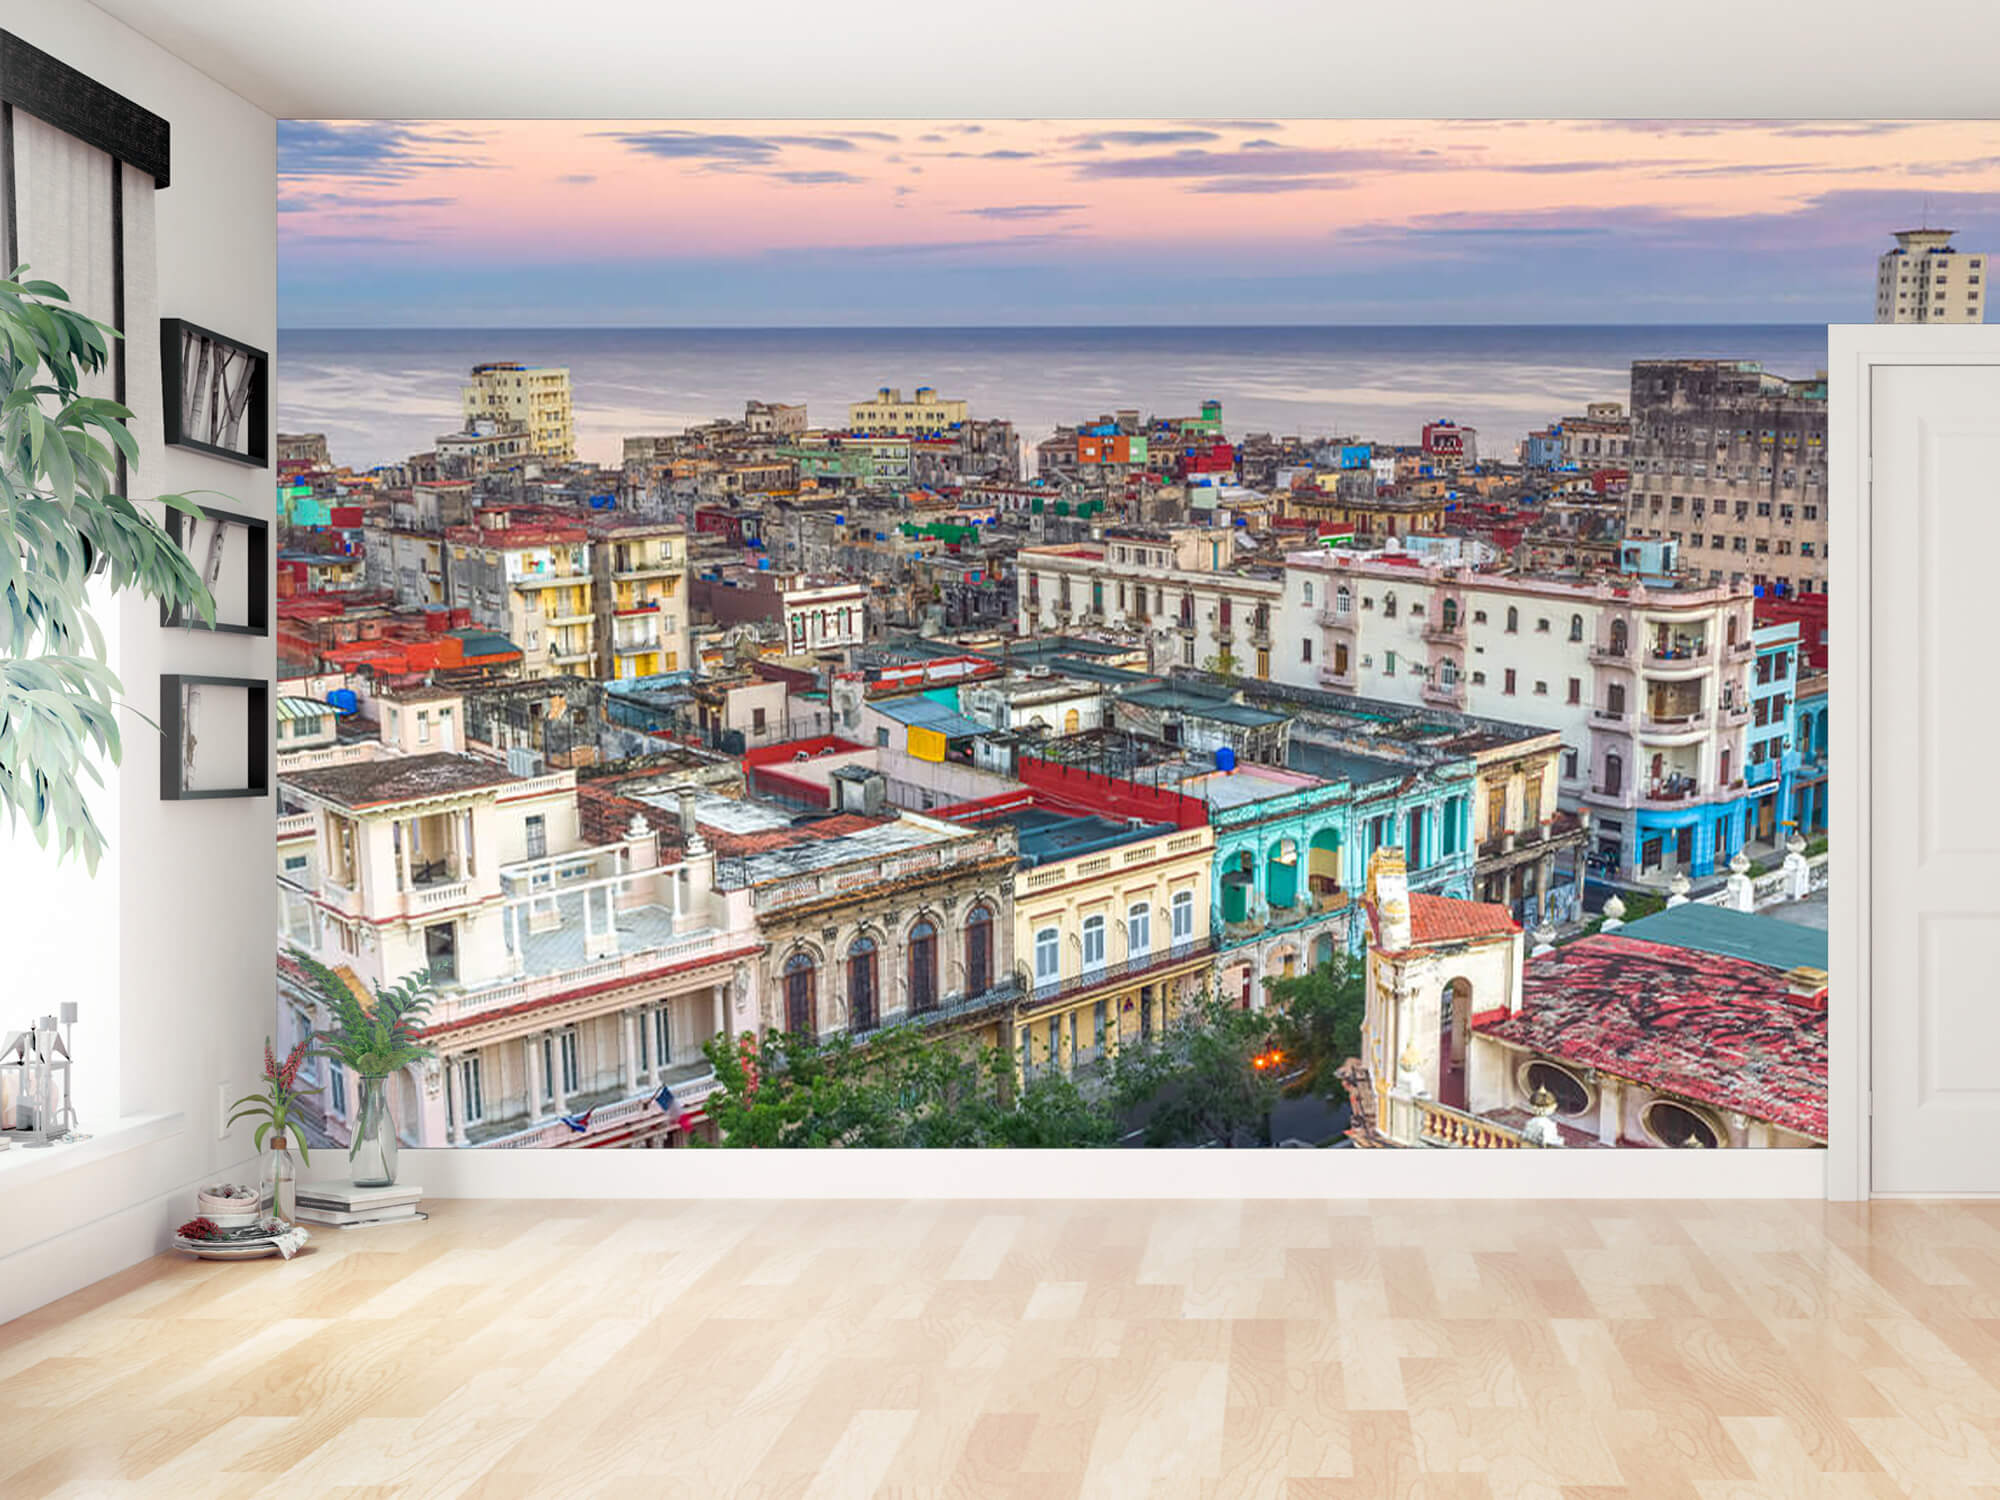  Papel pintado con La Habana desde arriba - Salón 12